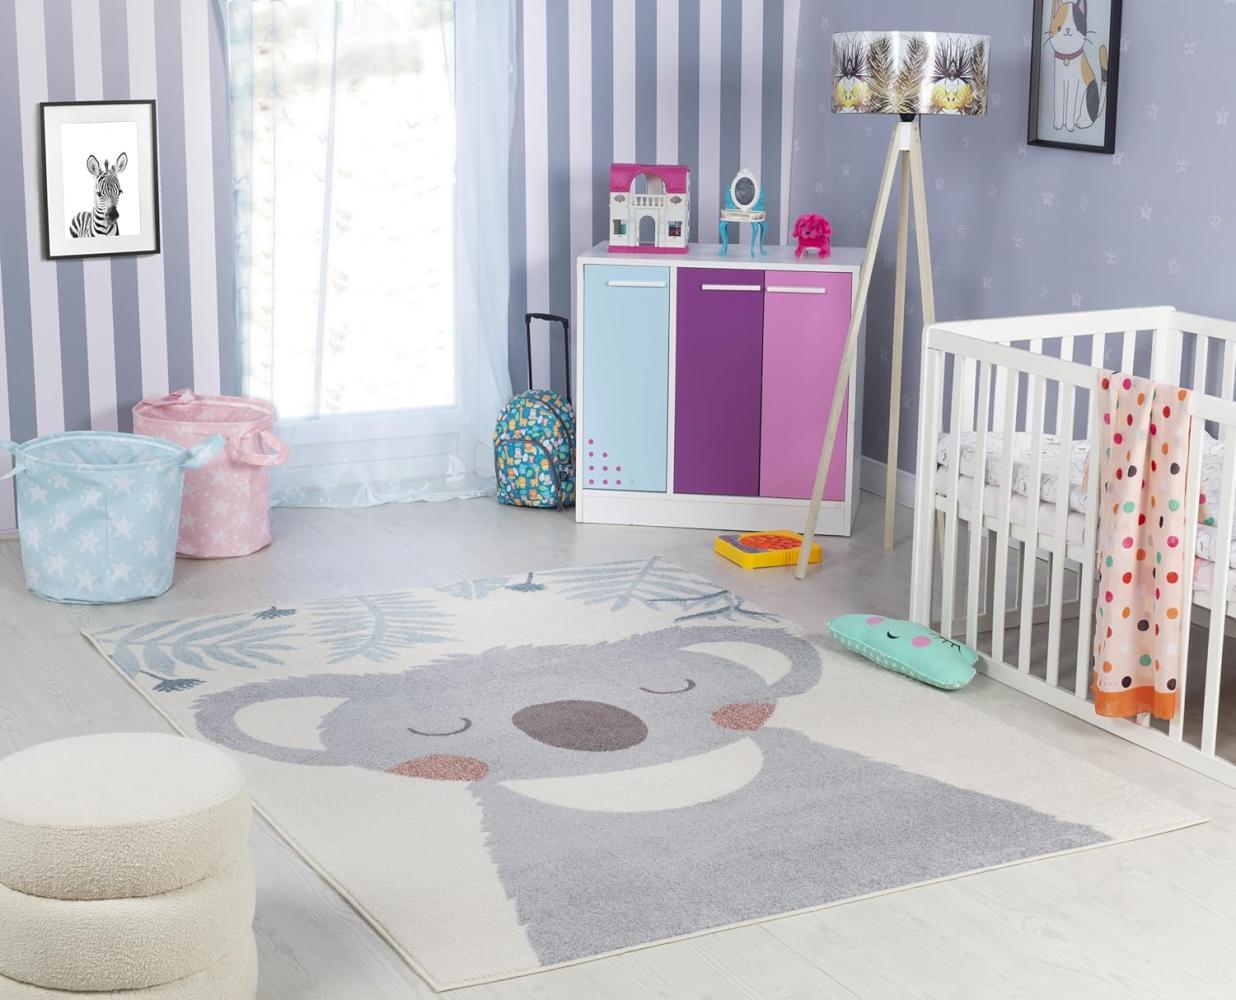 Surya Koala Kinderteppich - Cartoon Teppich Kinderzimmer oder Babyzimmer, Kinderzimmerteppich, Krabbelteppich oder Spielteppich - Baby Teppich für Jungen & Mädchen, Grau und Elfenbein 160x213 Bild 1